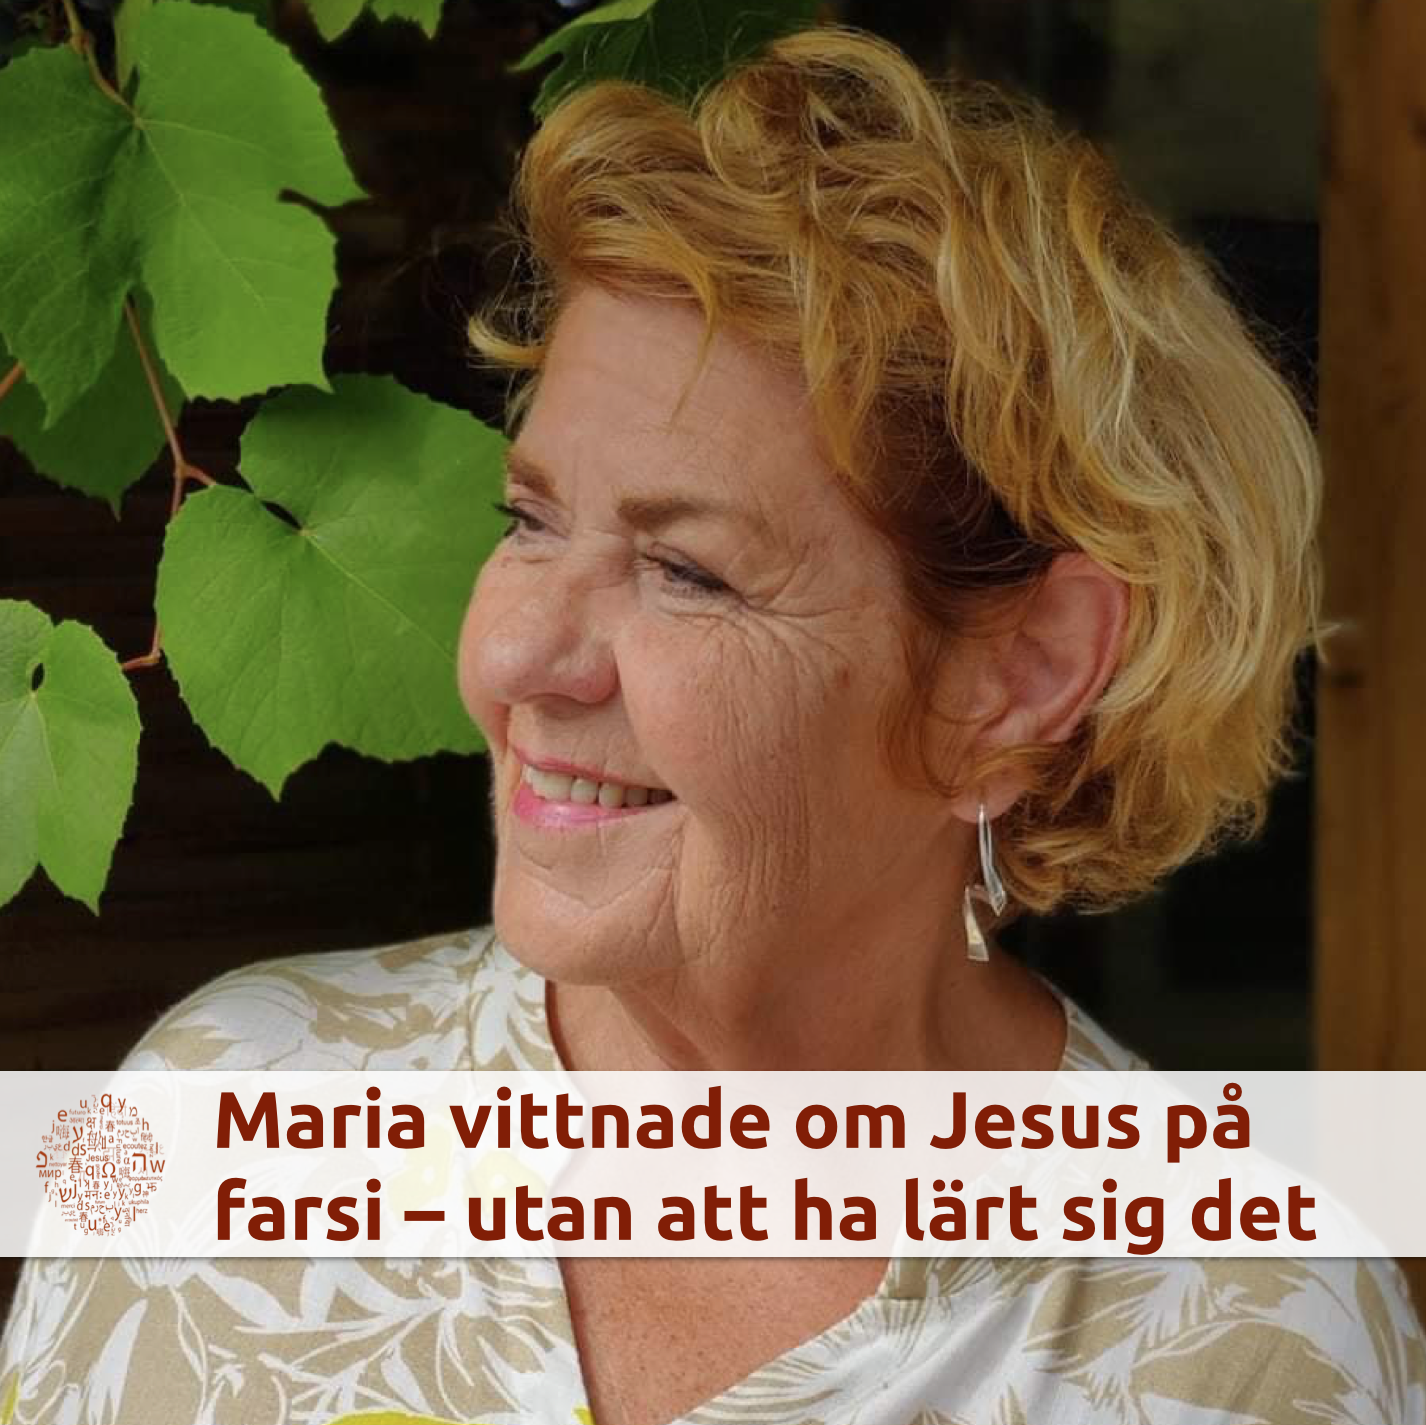 Maria vittnade om Jesus på farsi – ett språk hon aldrig har lärt sig